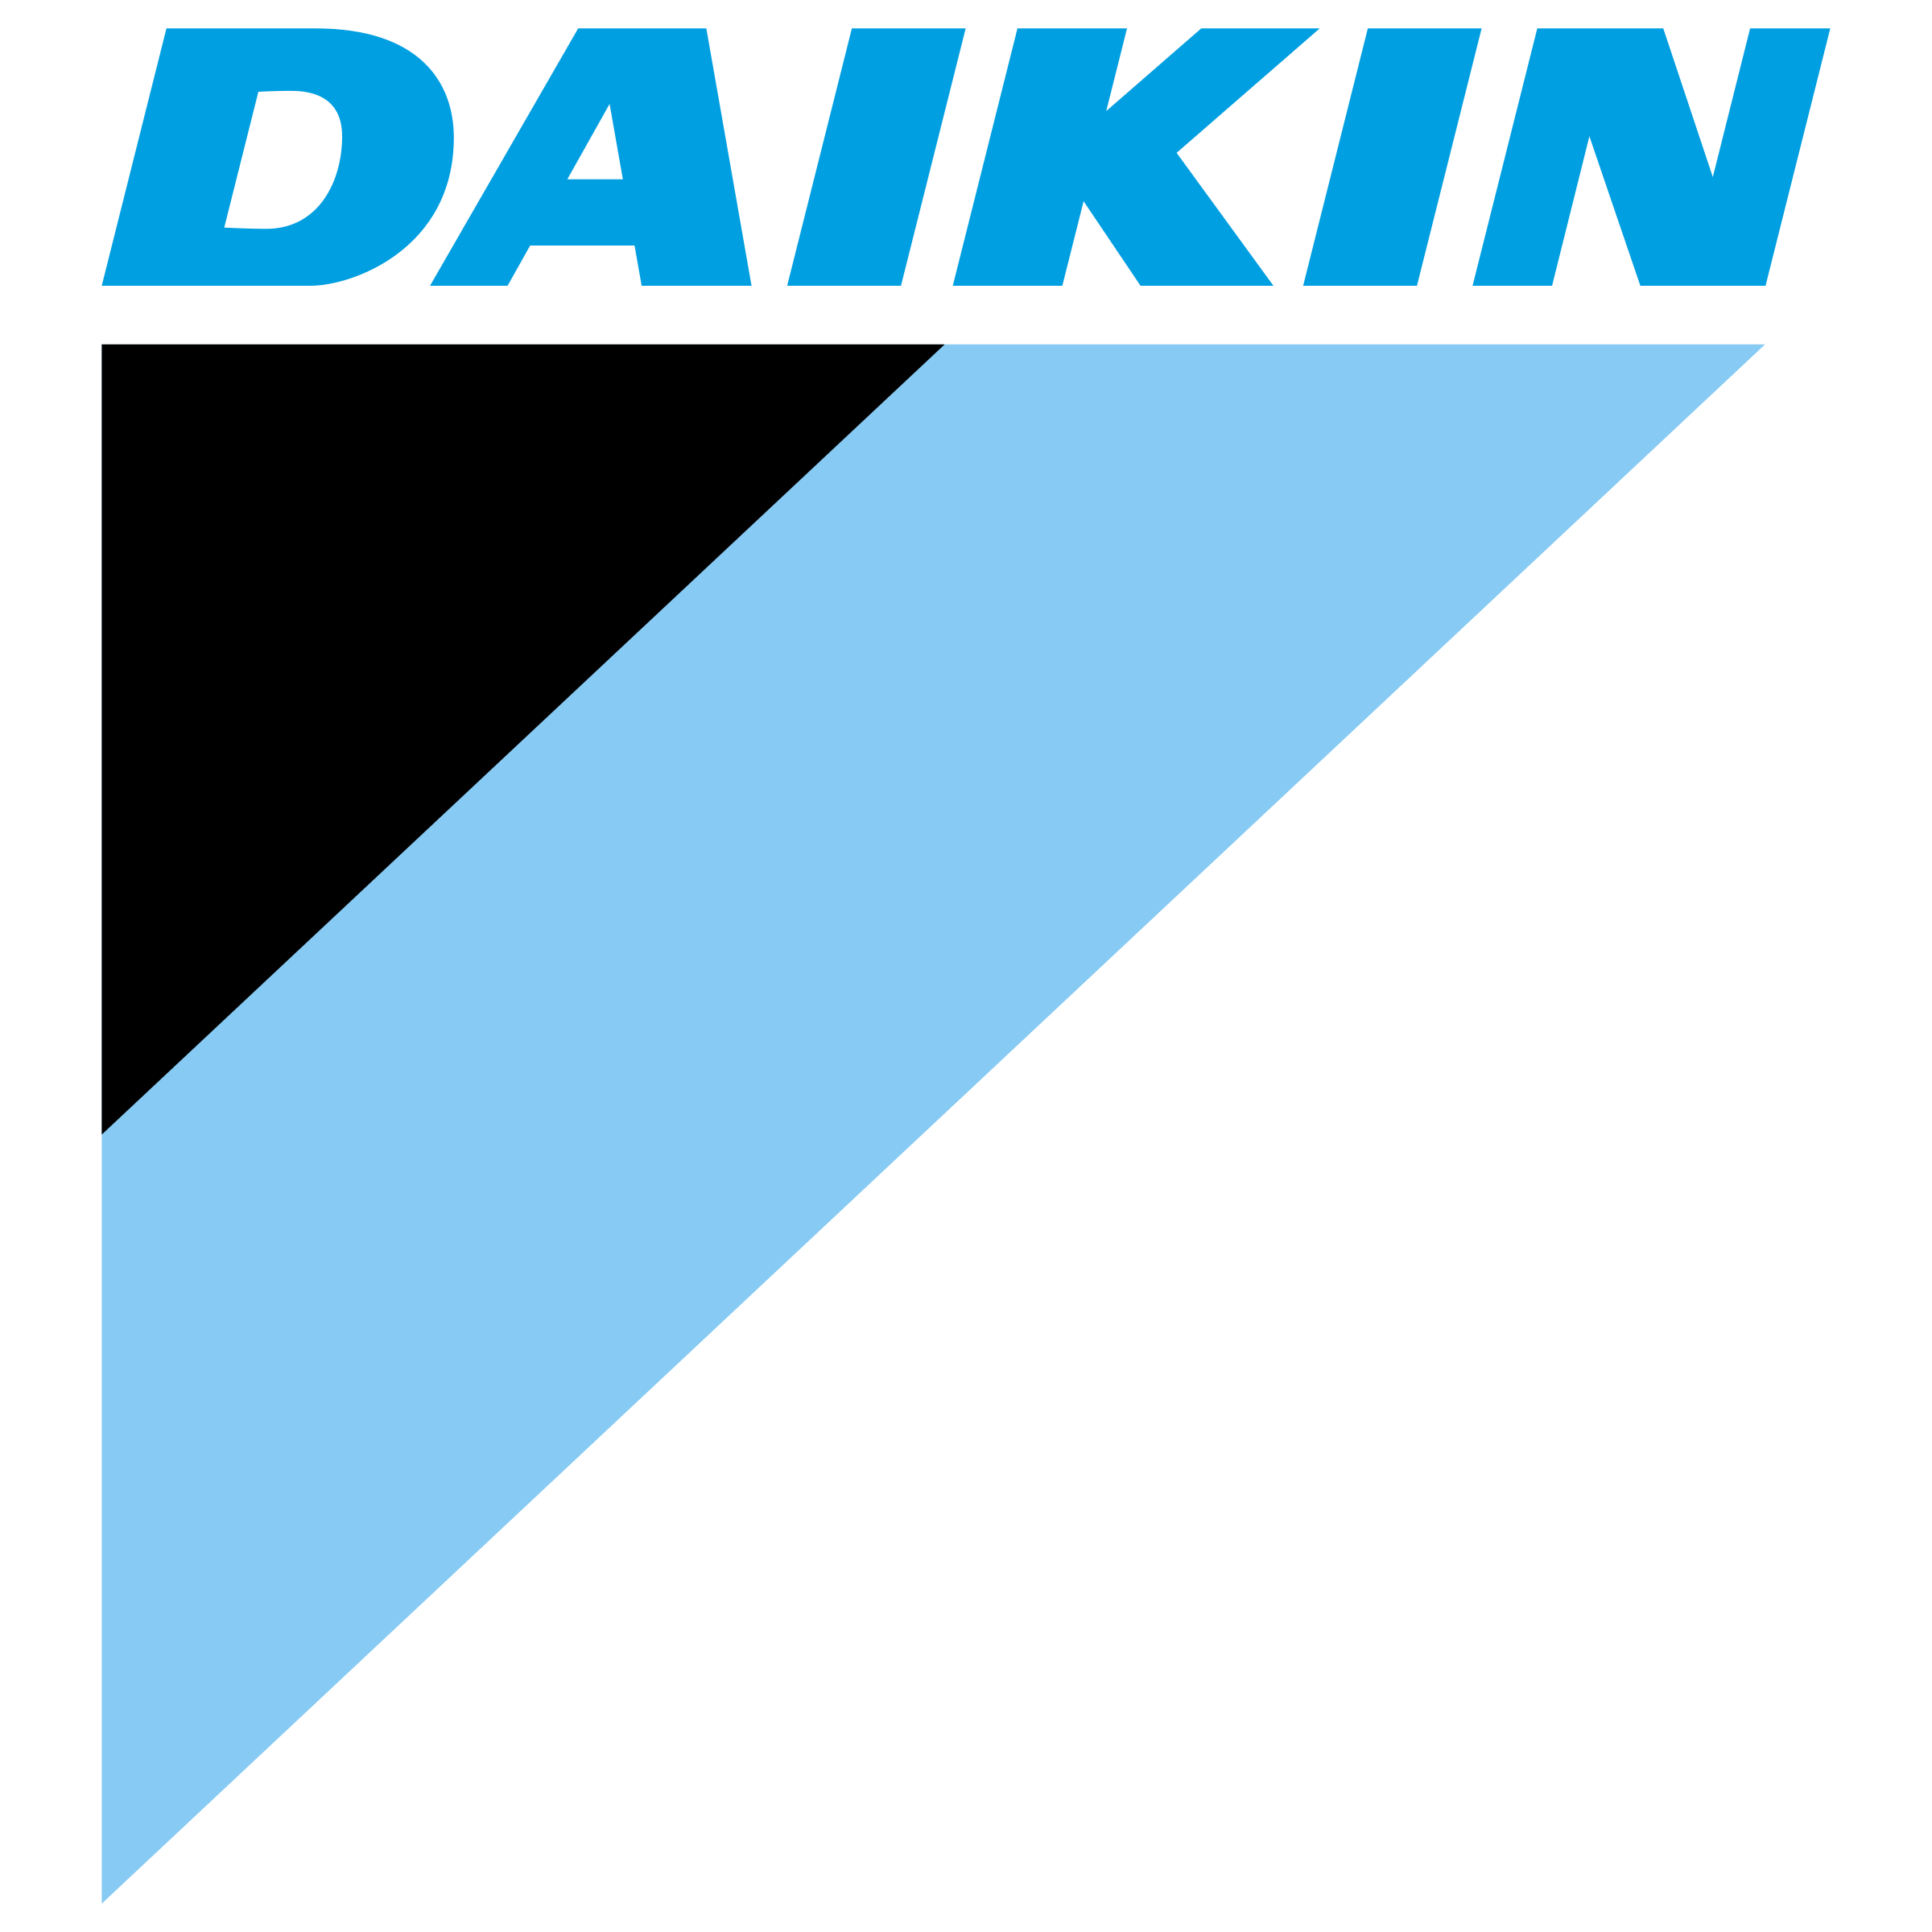 Daikin Logo Transparent Images